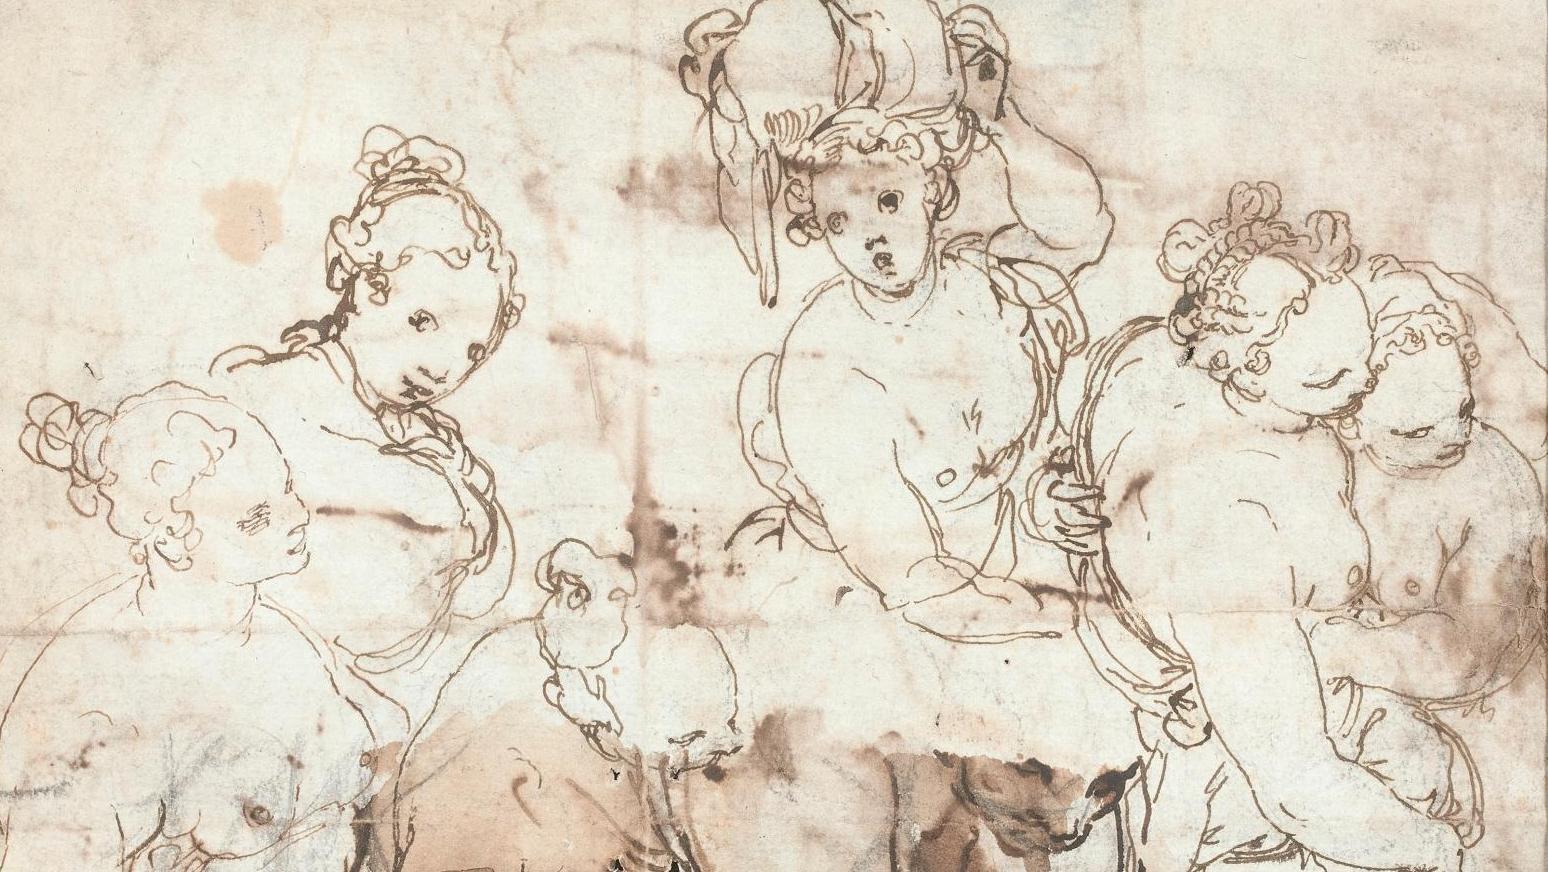 Taddeo Zuccaro (1529-1566), Sept Études de femmes, au verso une esquisse de paysage... Taddeo Zuccaro, a Mannerist Revelation